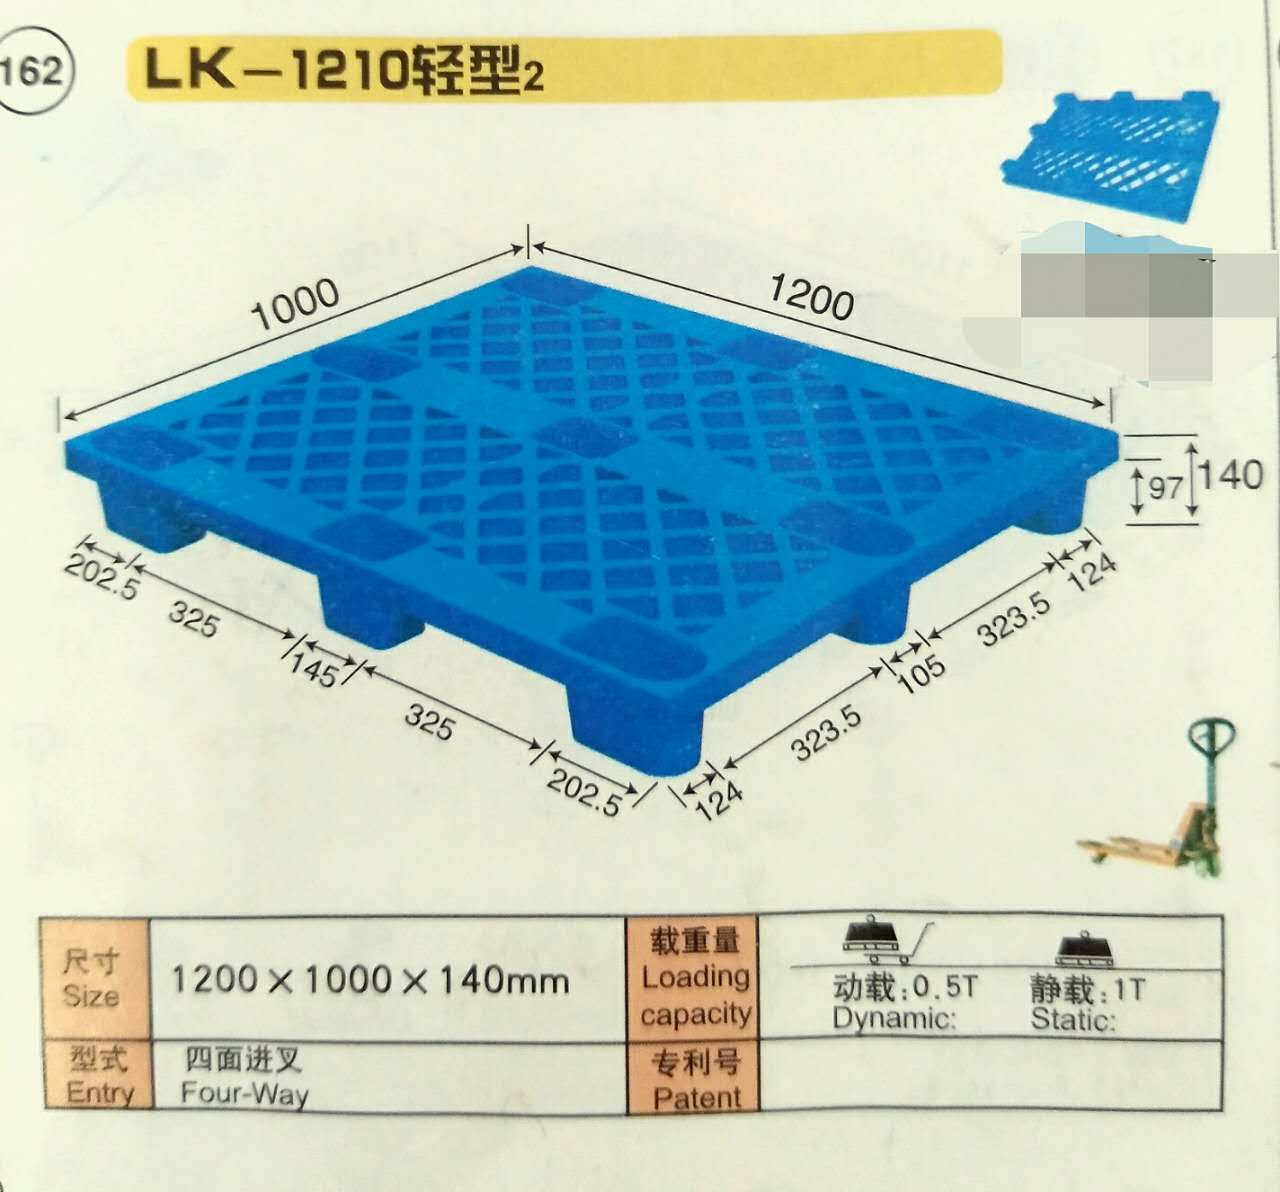 厂家直销1210轻型单面网格九脚塑料托盘 LK-1210轻型塑料托盘